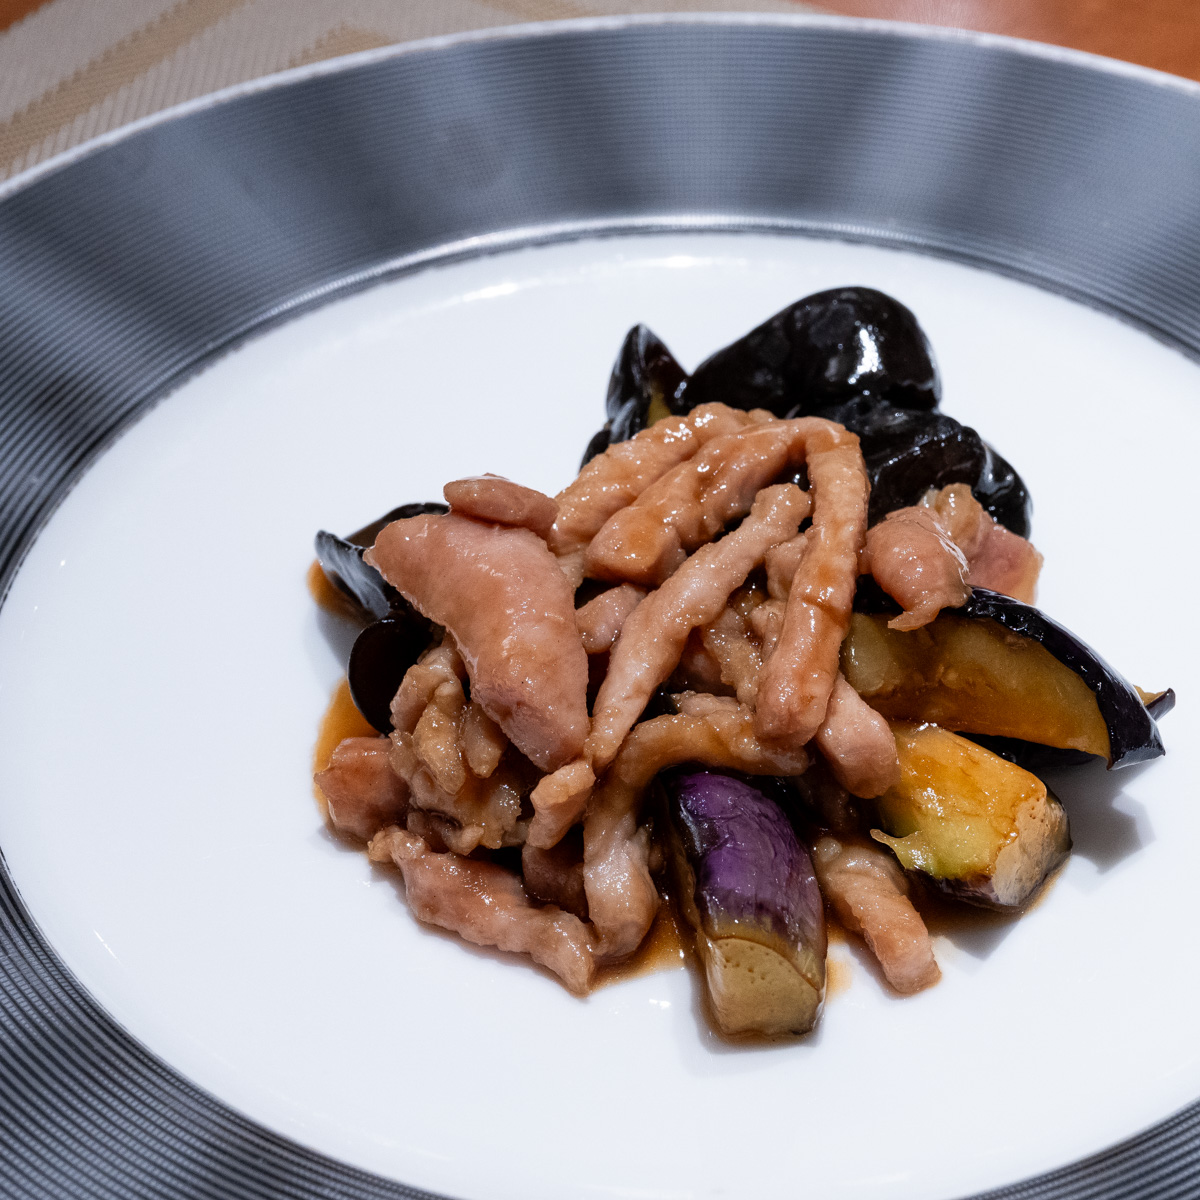 木耳と豚肉と茄子の炒め(2 名分) Stir-fried Cloud Ear Mushroom ,Pork and Eggplant with Oyster Sauce (for 2p)